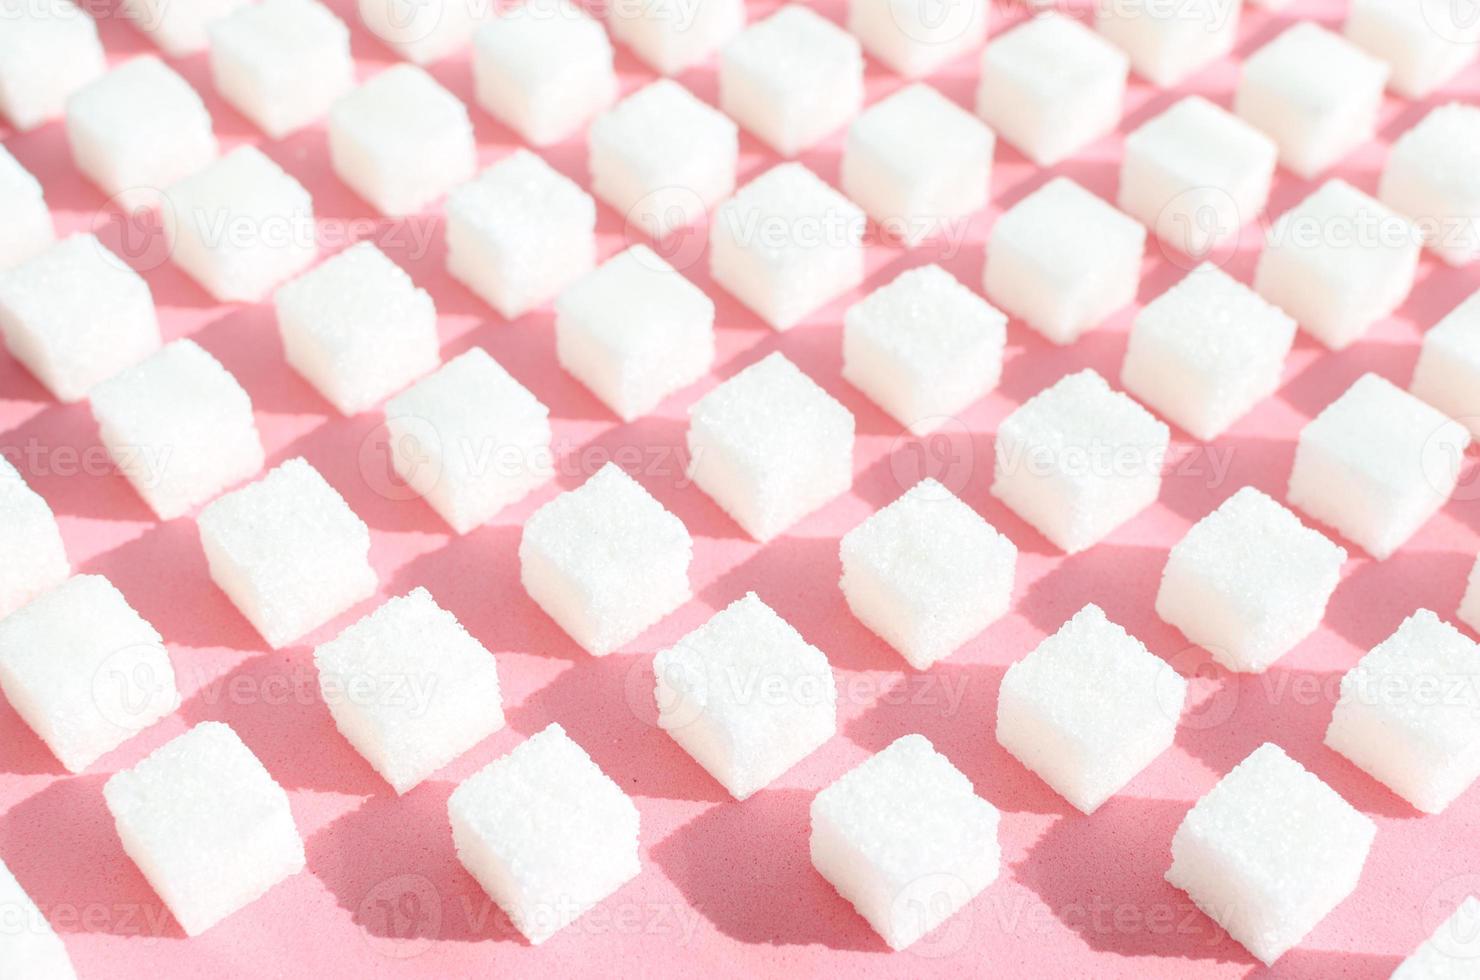 azúcar refinada sobre fondo rosa. cubos de azúcar dulce y blanco en forma geométrica. sombras duras. foto